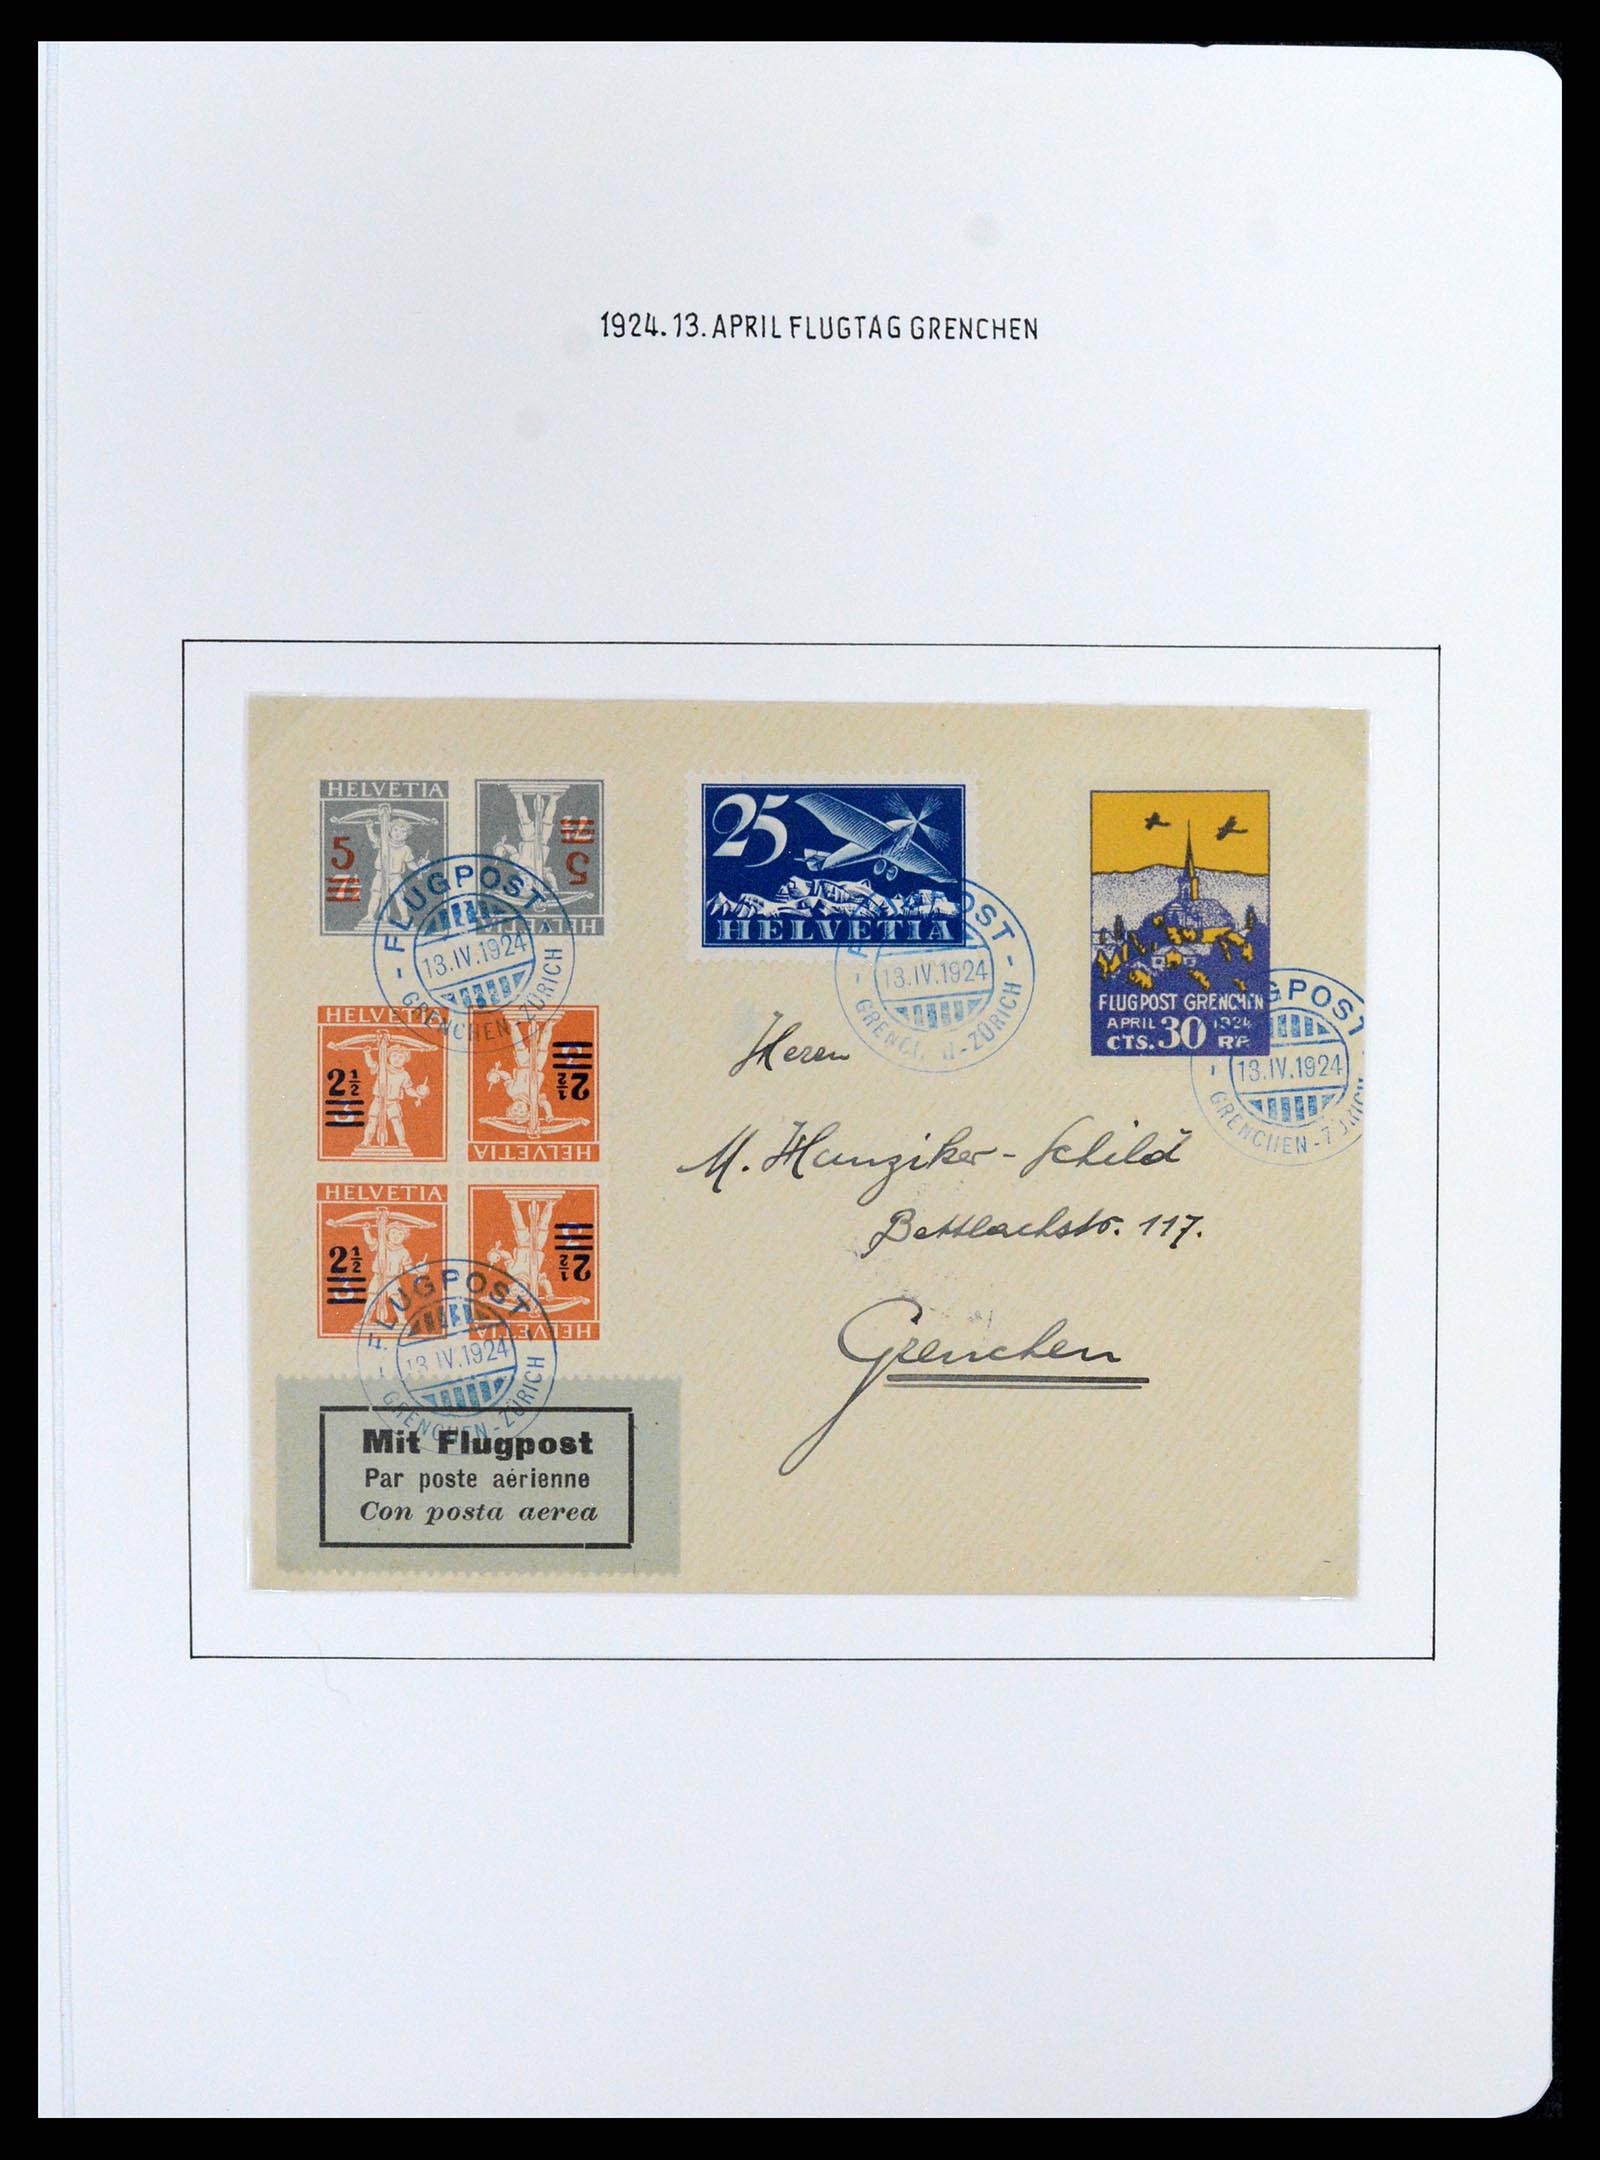 37700 011 - Postzegelverzameling 37700 Zwitserland luchtpost brieven collectie 19